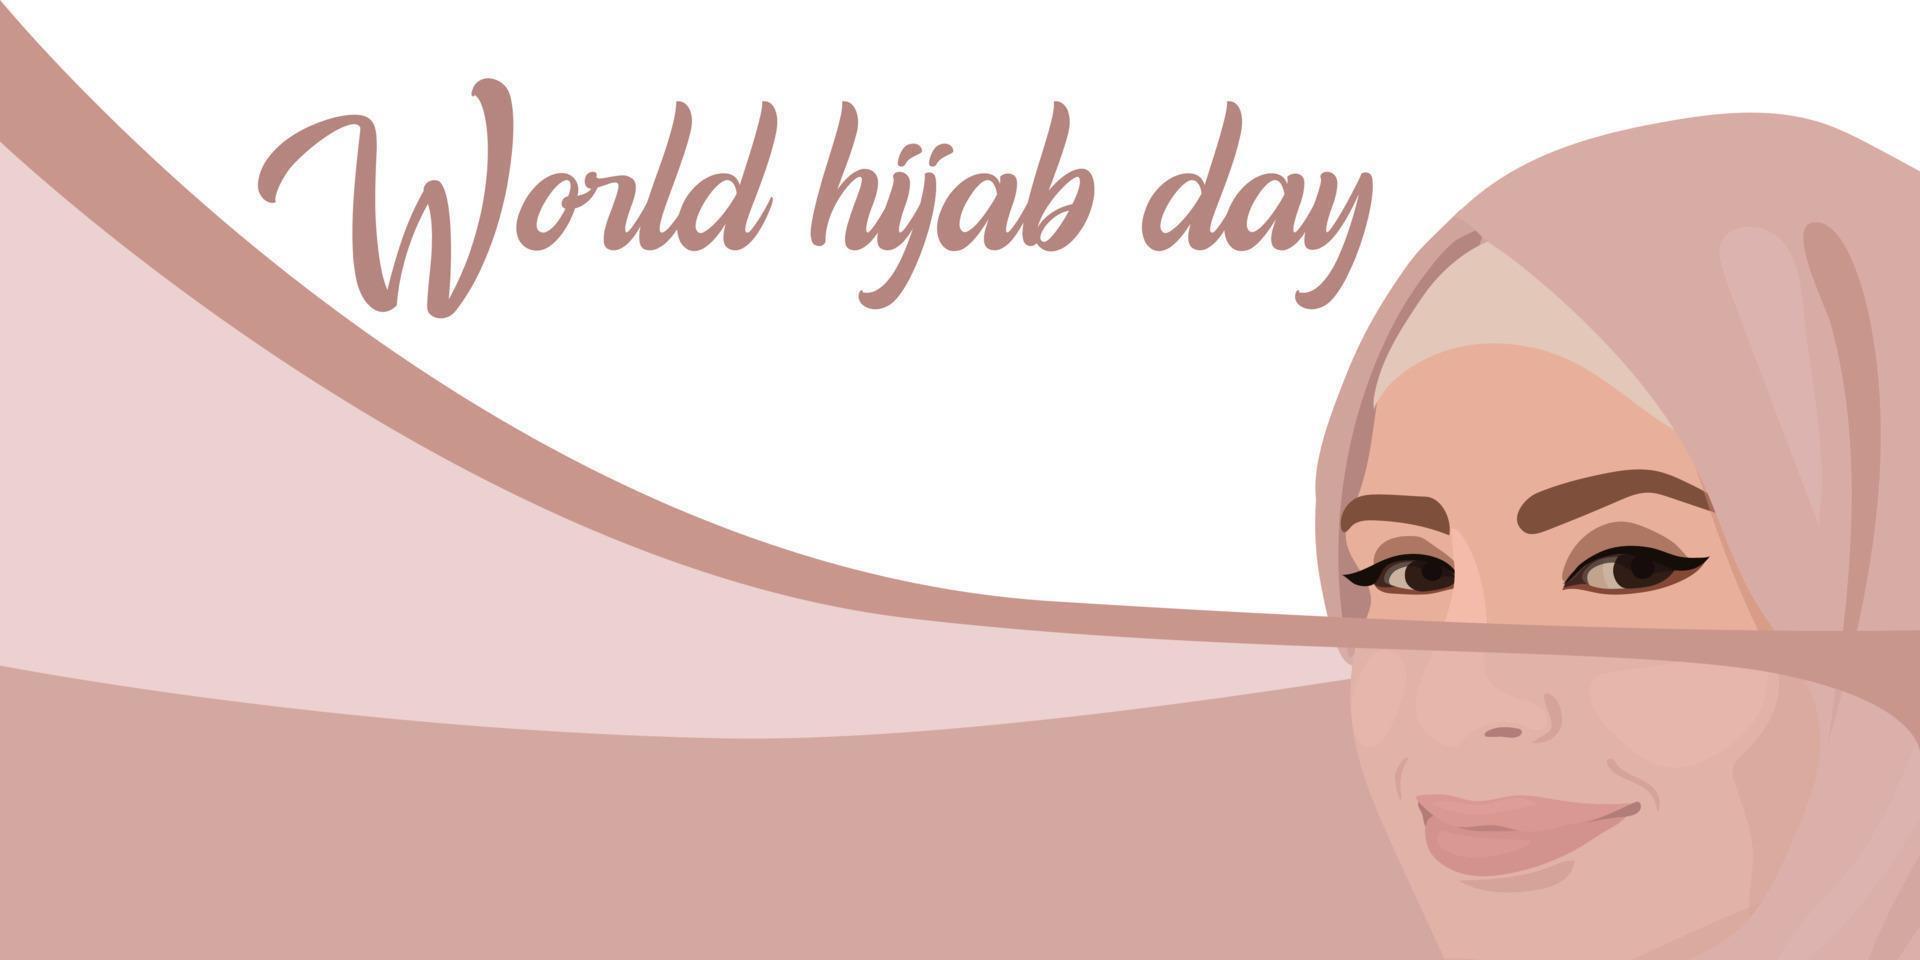 journée mondiale du hijab. une femme musulmane dans un hijab. femme arabe. 1 février. bonne journée mondiale de la femme en hijab. illustration vectorielle d'une fille dans un foulard. La bannière vecteur